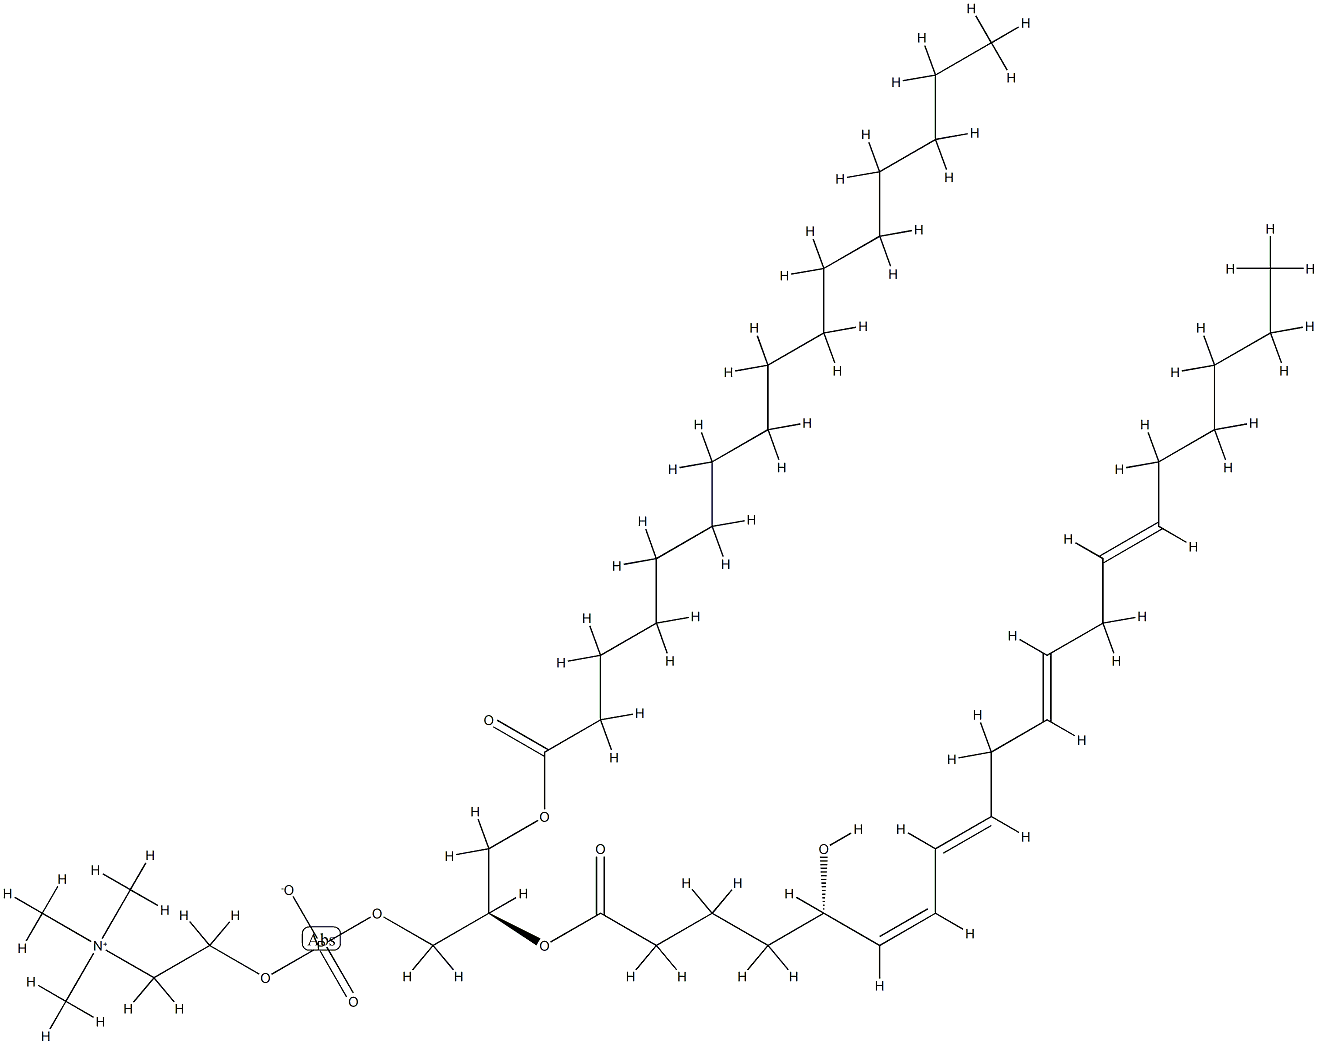 1-palmitoyl-2-(5-hydroxy-6,8,11,14-eicosatetraenoyl)-glycero-3-phosphocholine